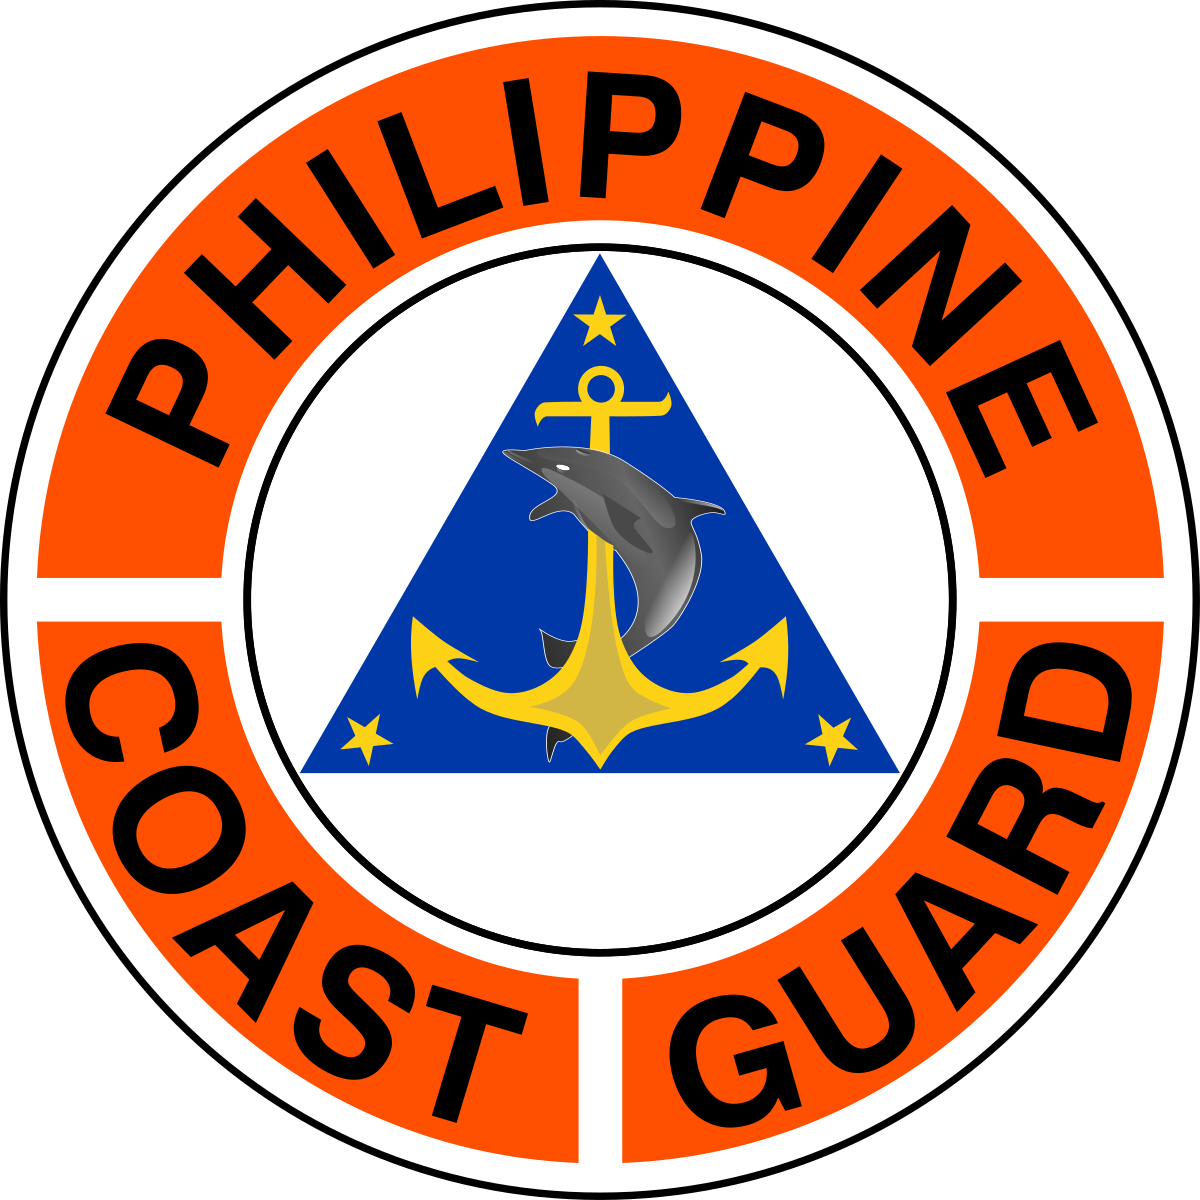 Philippine Coast Guard - Philippine Coast Guard Auxiliary (1200x1200)